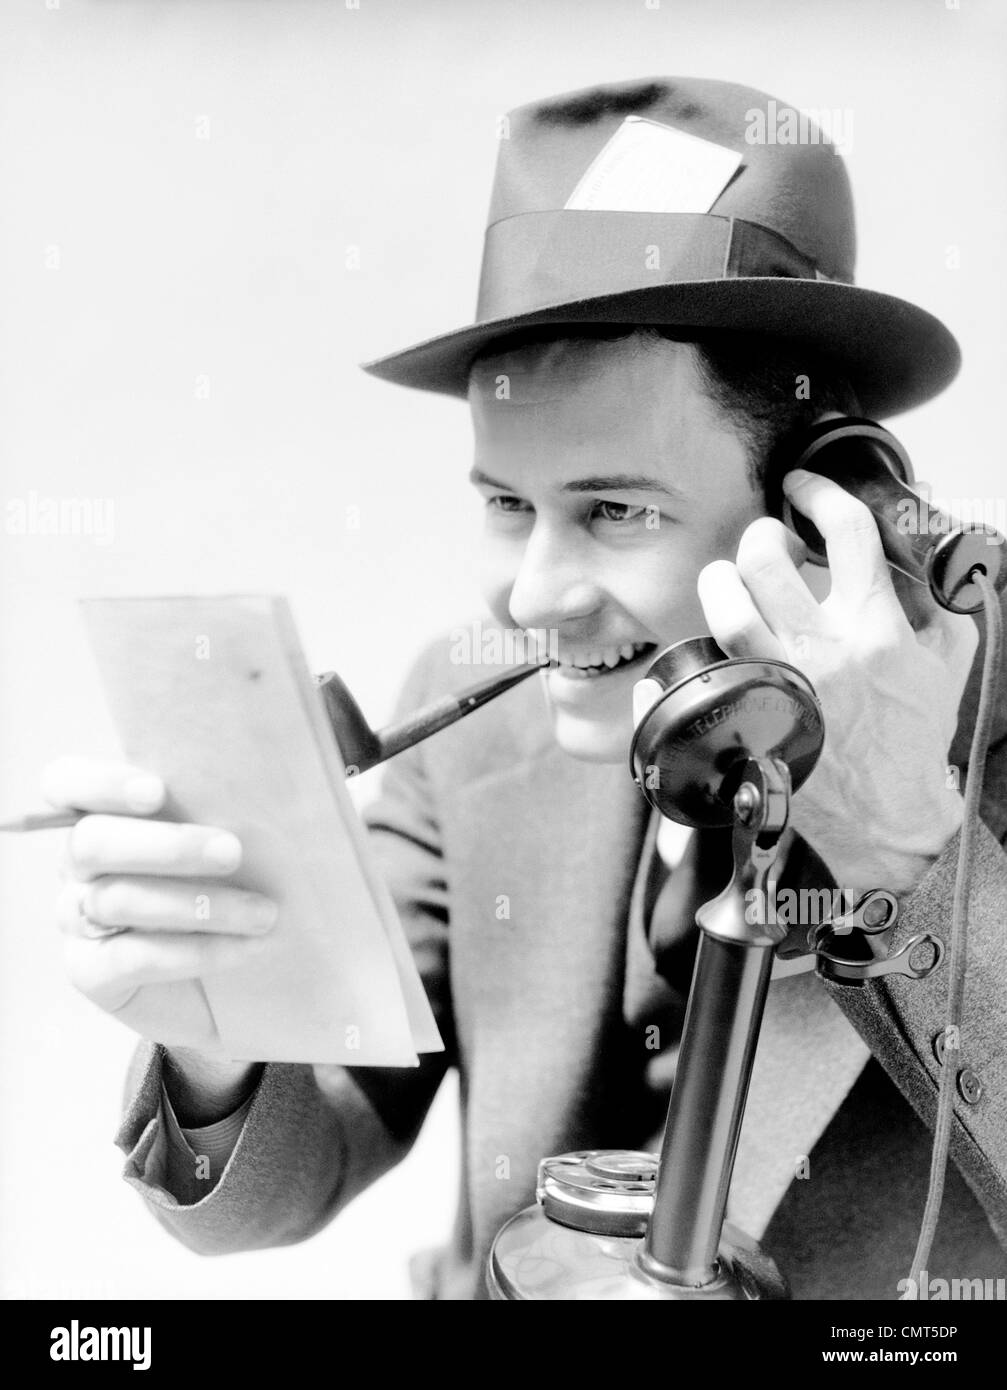 1930ER JAHRE MANN AUFGEREGT ZEITUNG REPORTER RAUCHEN PFEIFE PRESSEAUSWEIS IN HUT TELEFONIEREN AUFRECHT BERICHTERSTATTUNG GESCHICHTE VOM NOTIZBLOCK Stockfoto